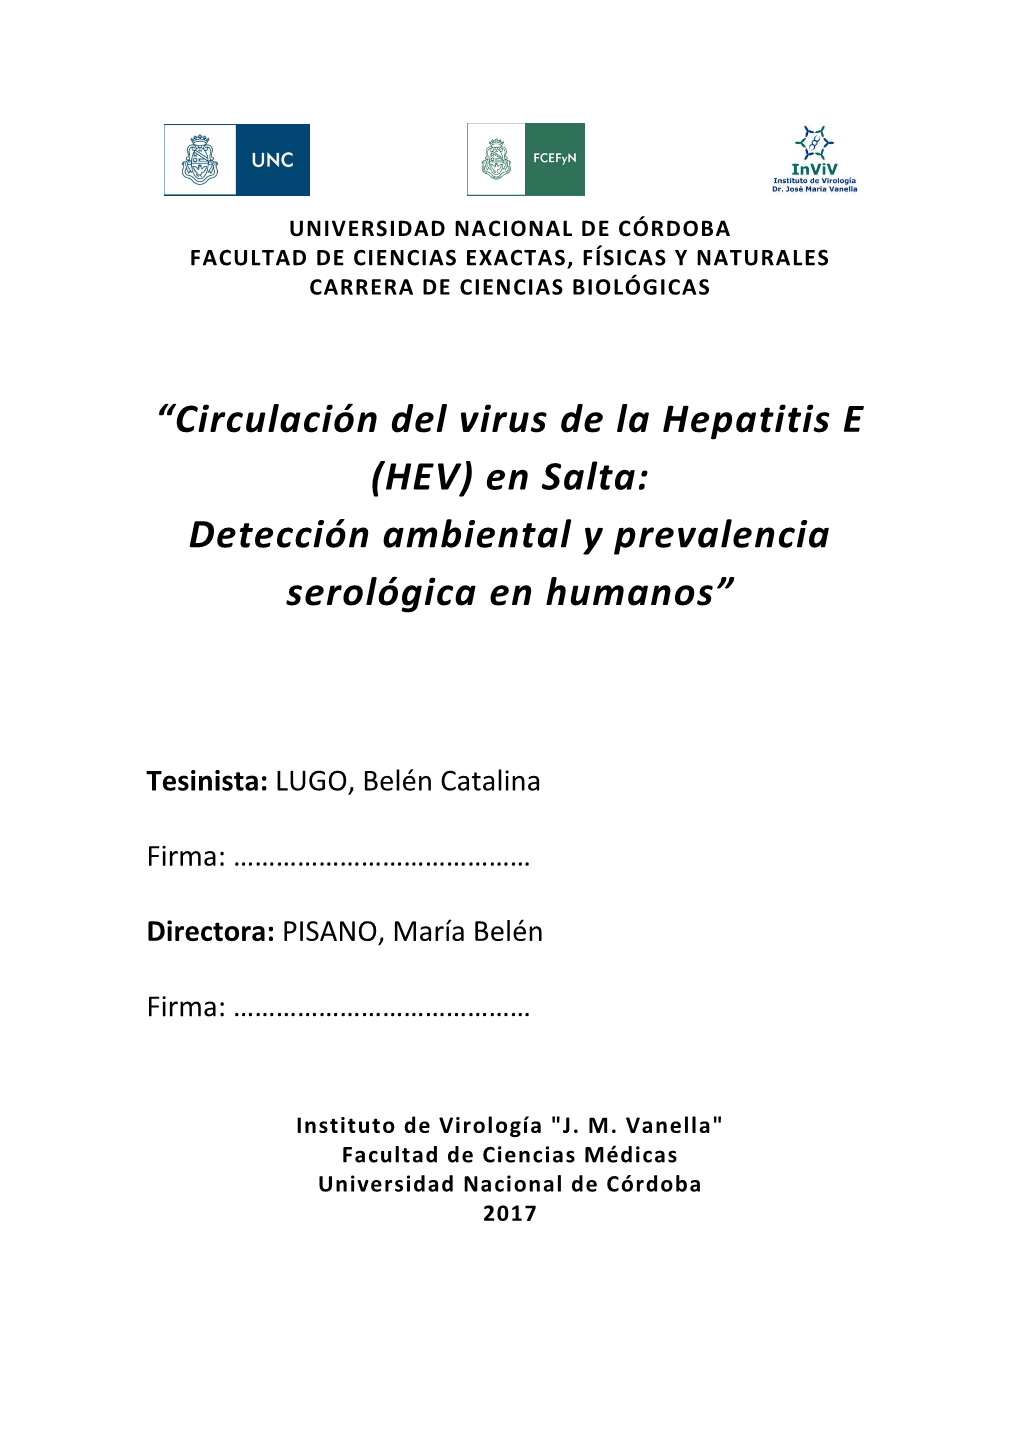 Circulación Del Virus De La Hepatitis E (HEV) En Salta: Detección Ambiental Y Prevalencia Serológica En Humanos”